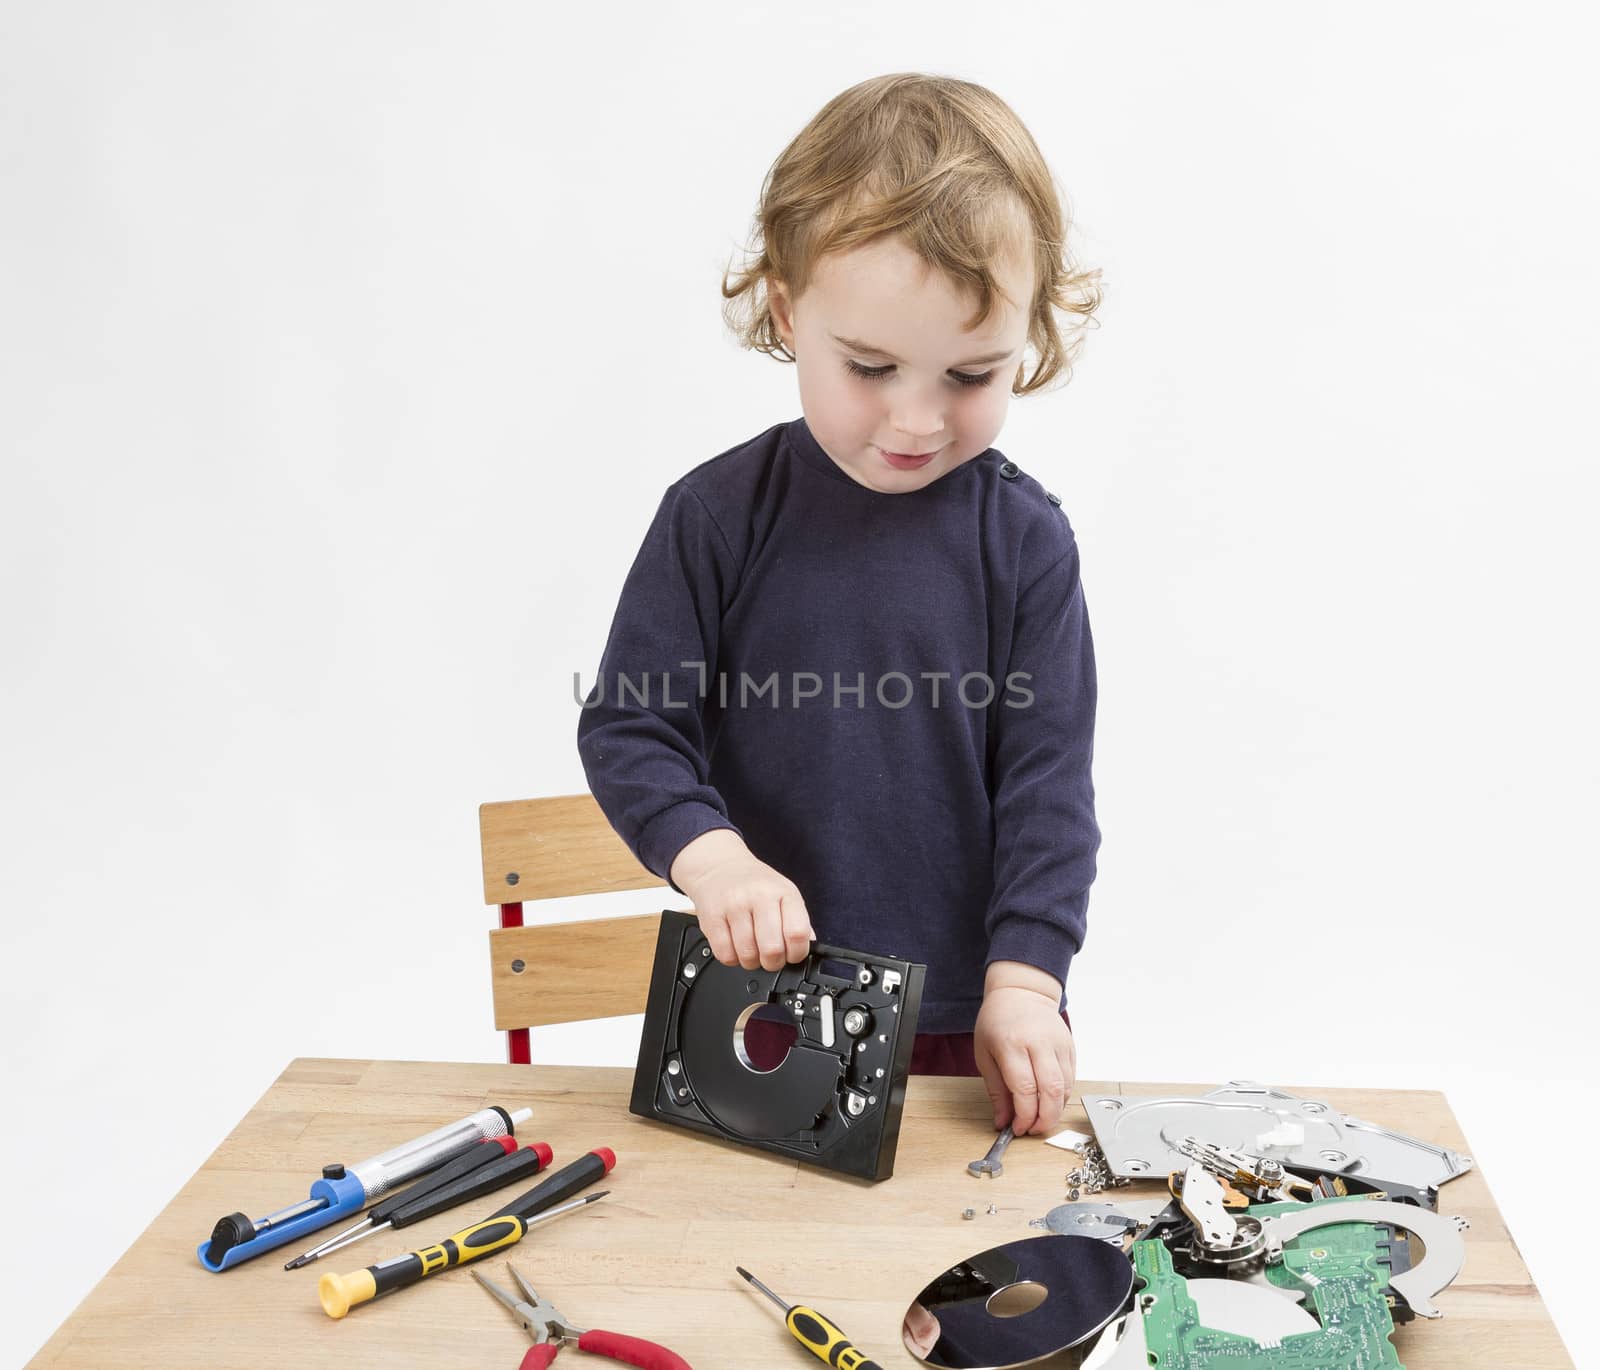 preschooler with computer parts on wooden desk. studio shot in light grey background